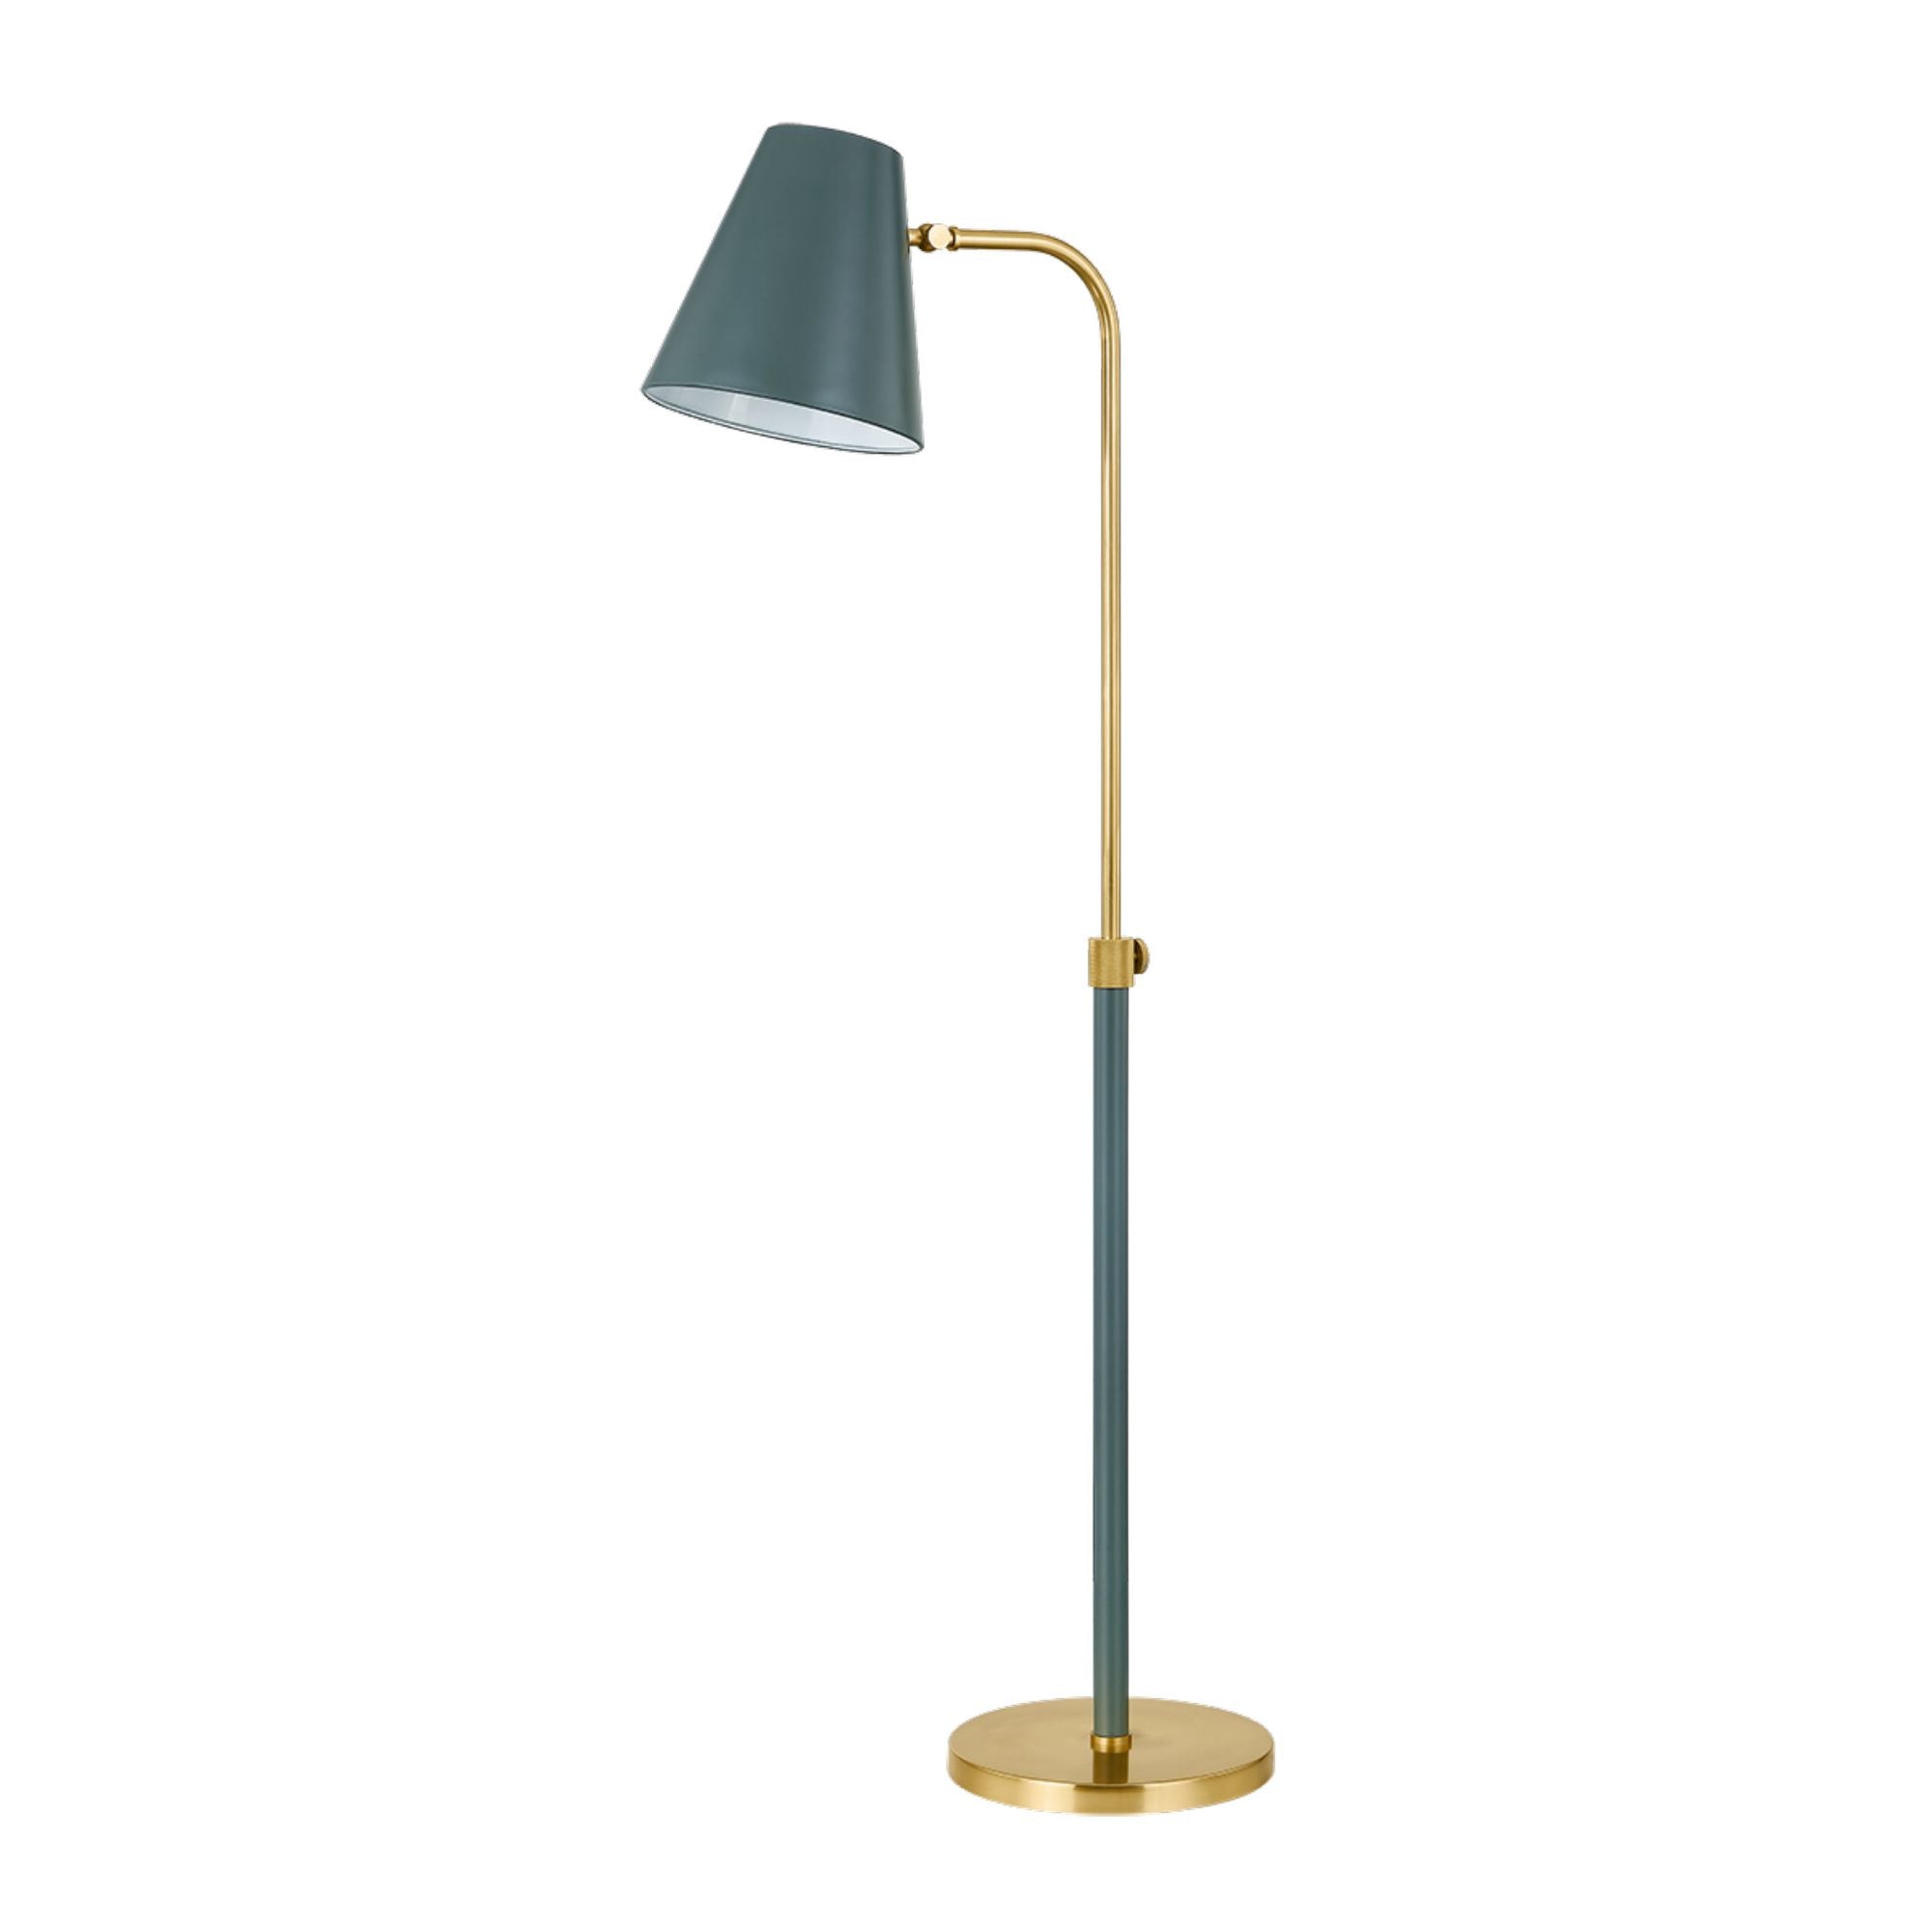 Georgann 1-Light Floor Lamp in Aged Brass/Soft Studio Green by Zoe Feldman